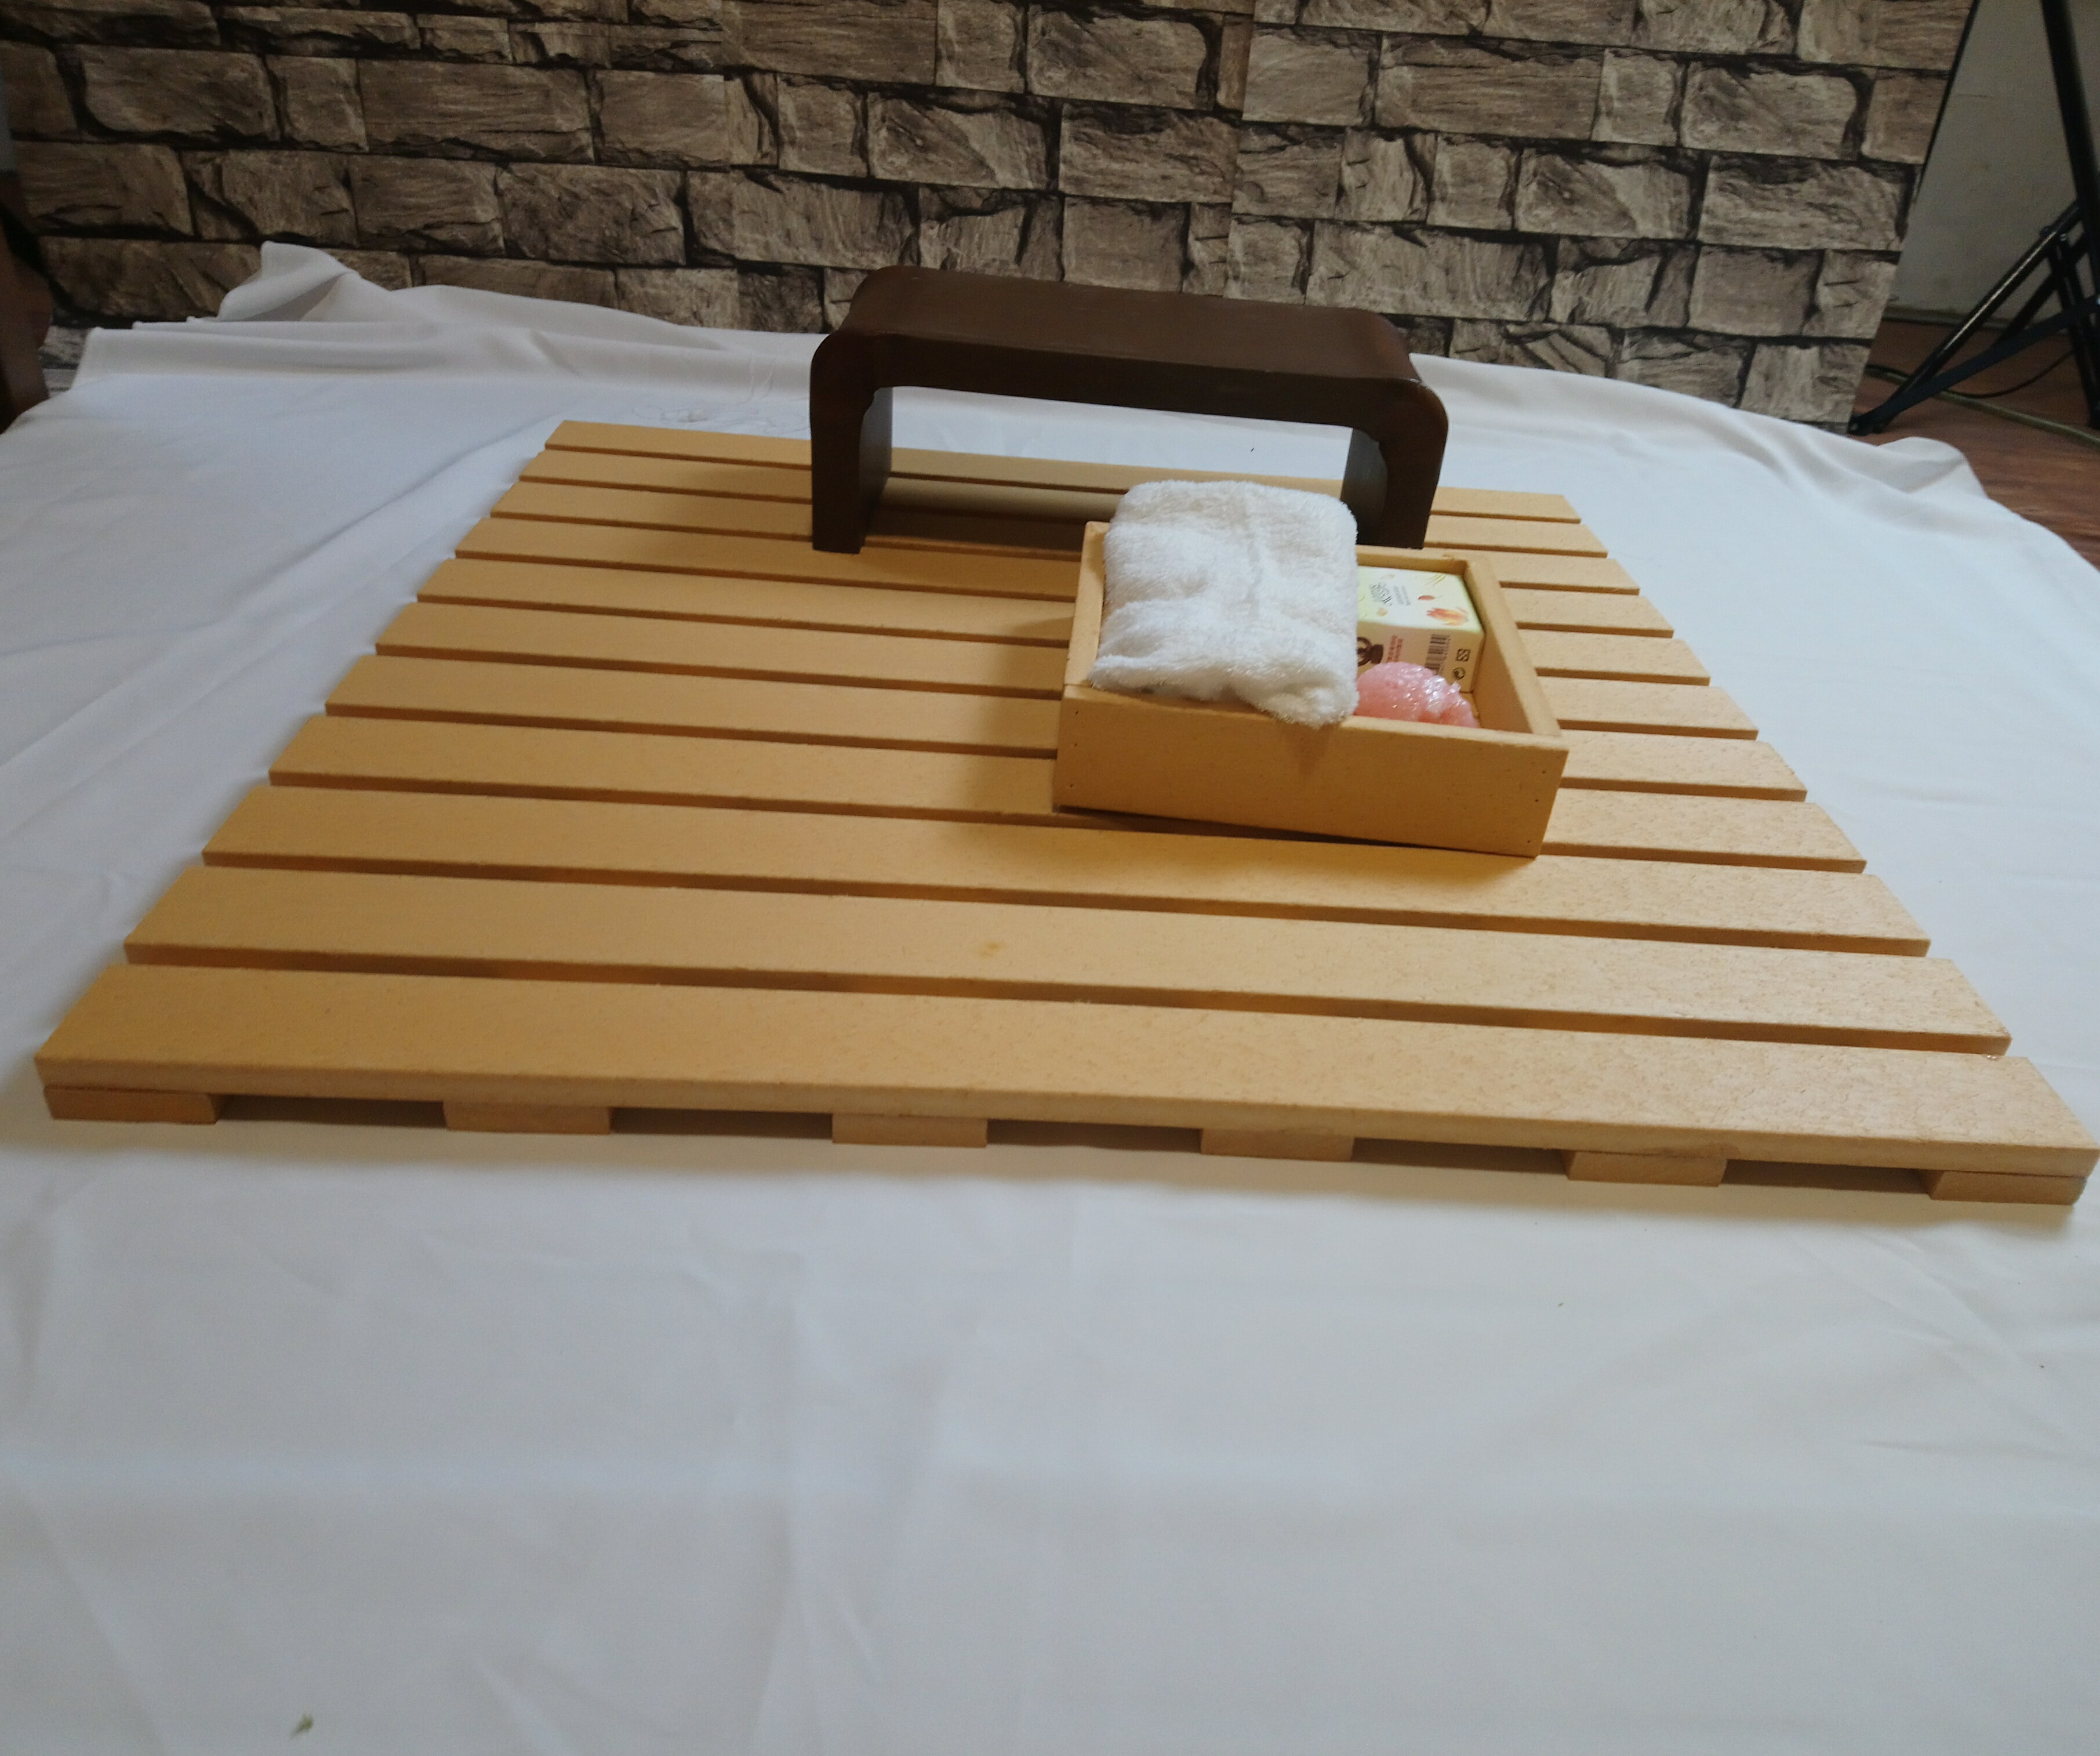 防水防滑浴室踏板(B材65x65x2.4cm)/浴室地板/陽台地板/ 戶外地板/防滑踏